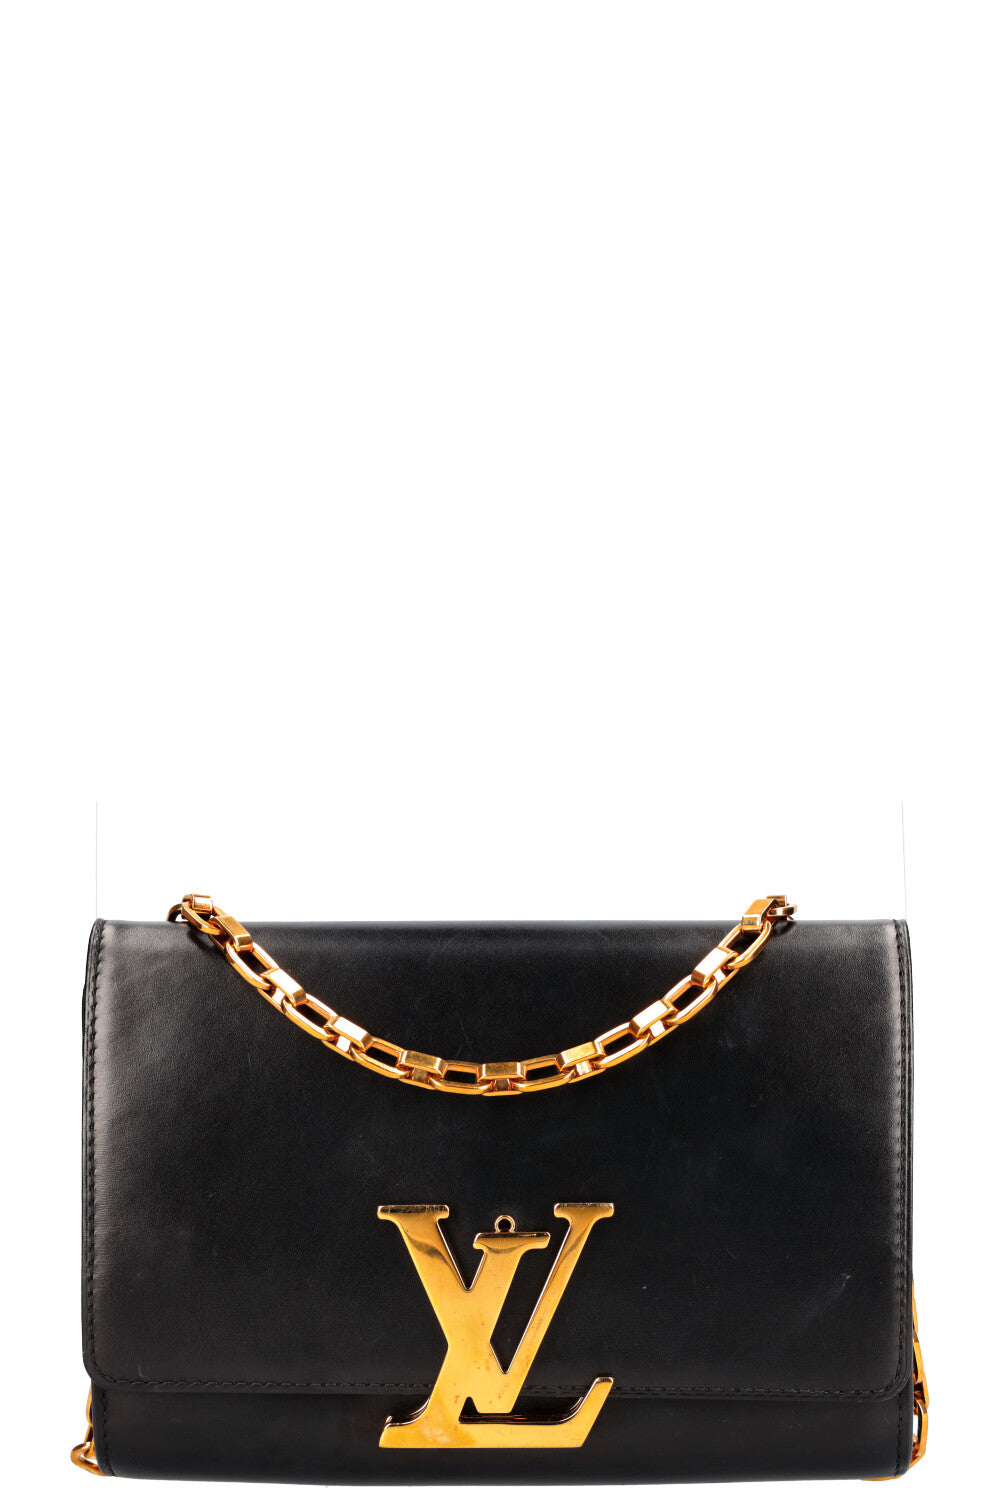 Bolsa Louis Vuitton Louise Black Calfskin Chain